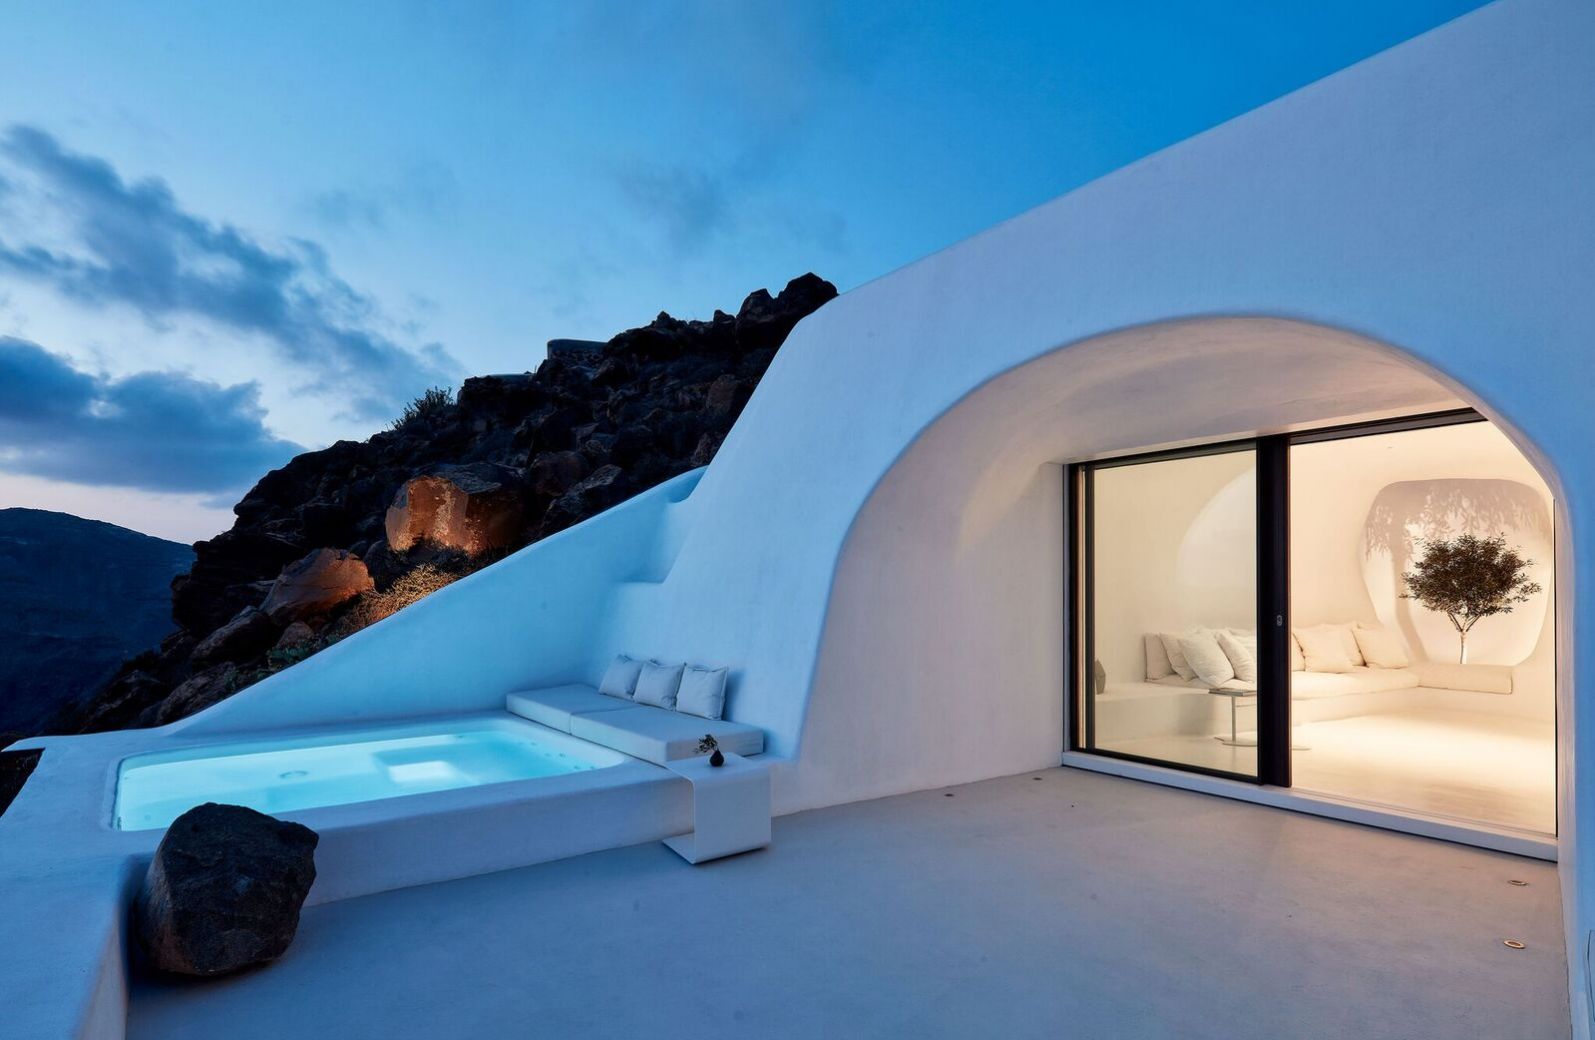   Aenaon Luxury Villas, Caldera, Santorini, Greece